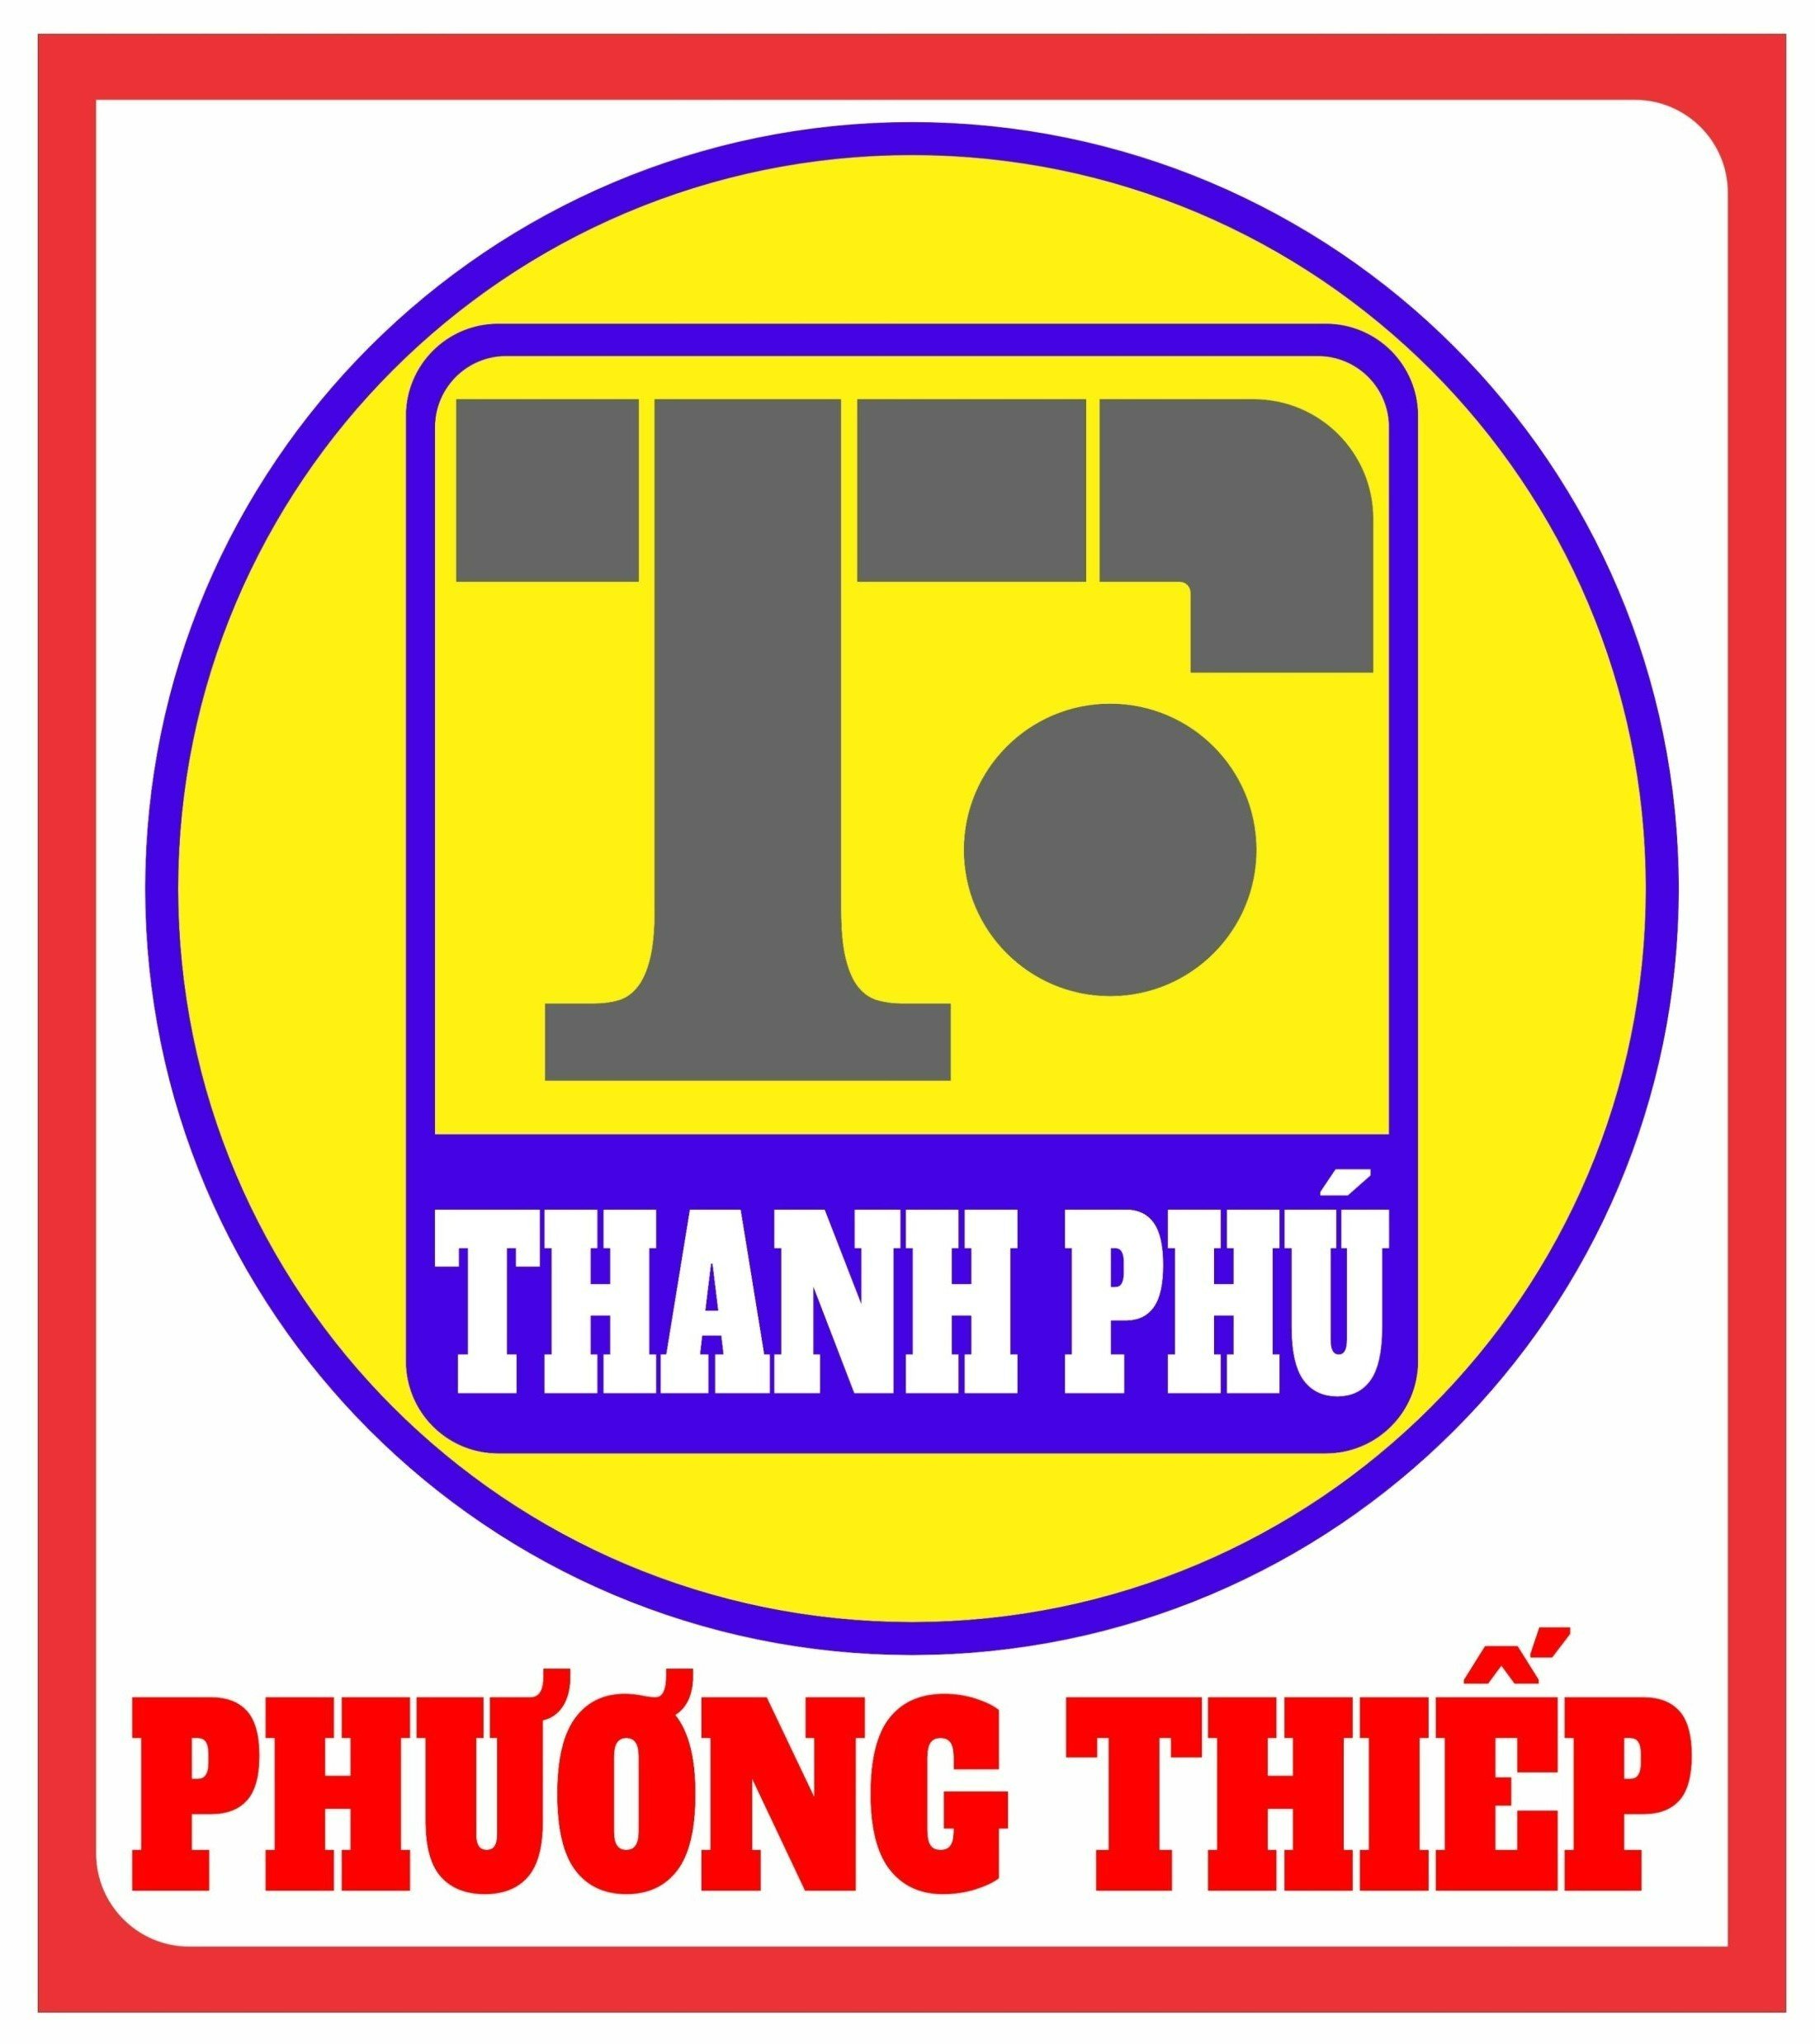 Thép Phương Thiếp (Thanh Phú)